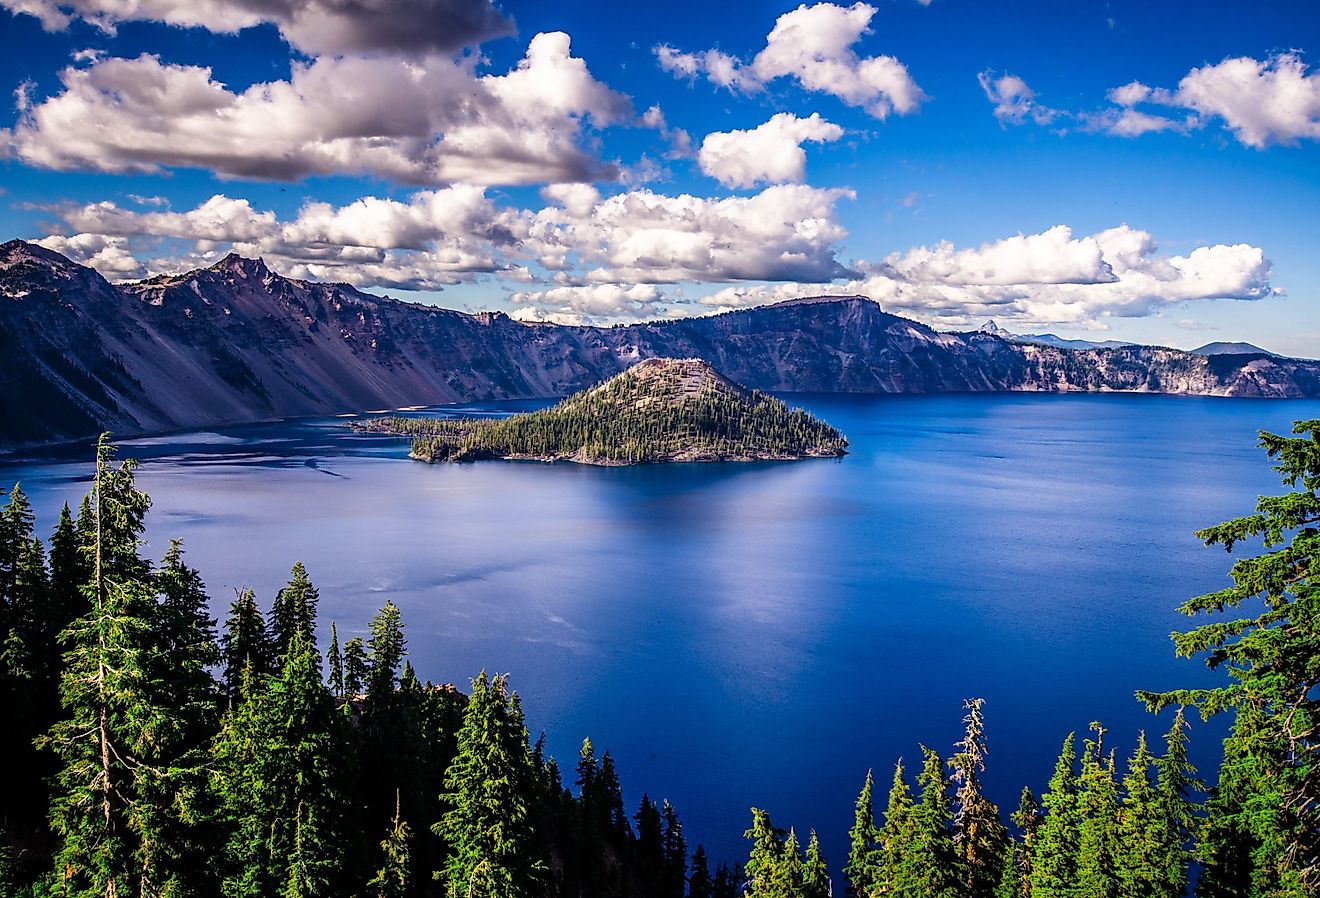 Crater Lake National Park, Oregon. Image credit Pung via Shutterstock.